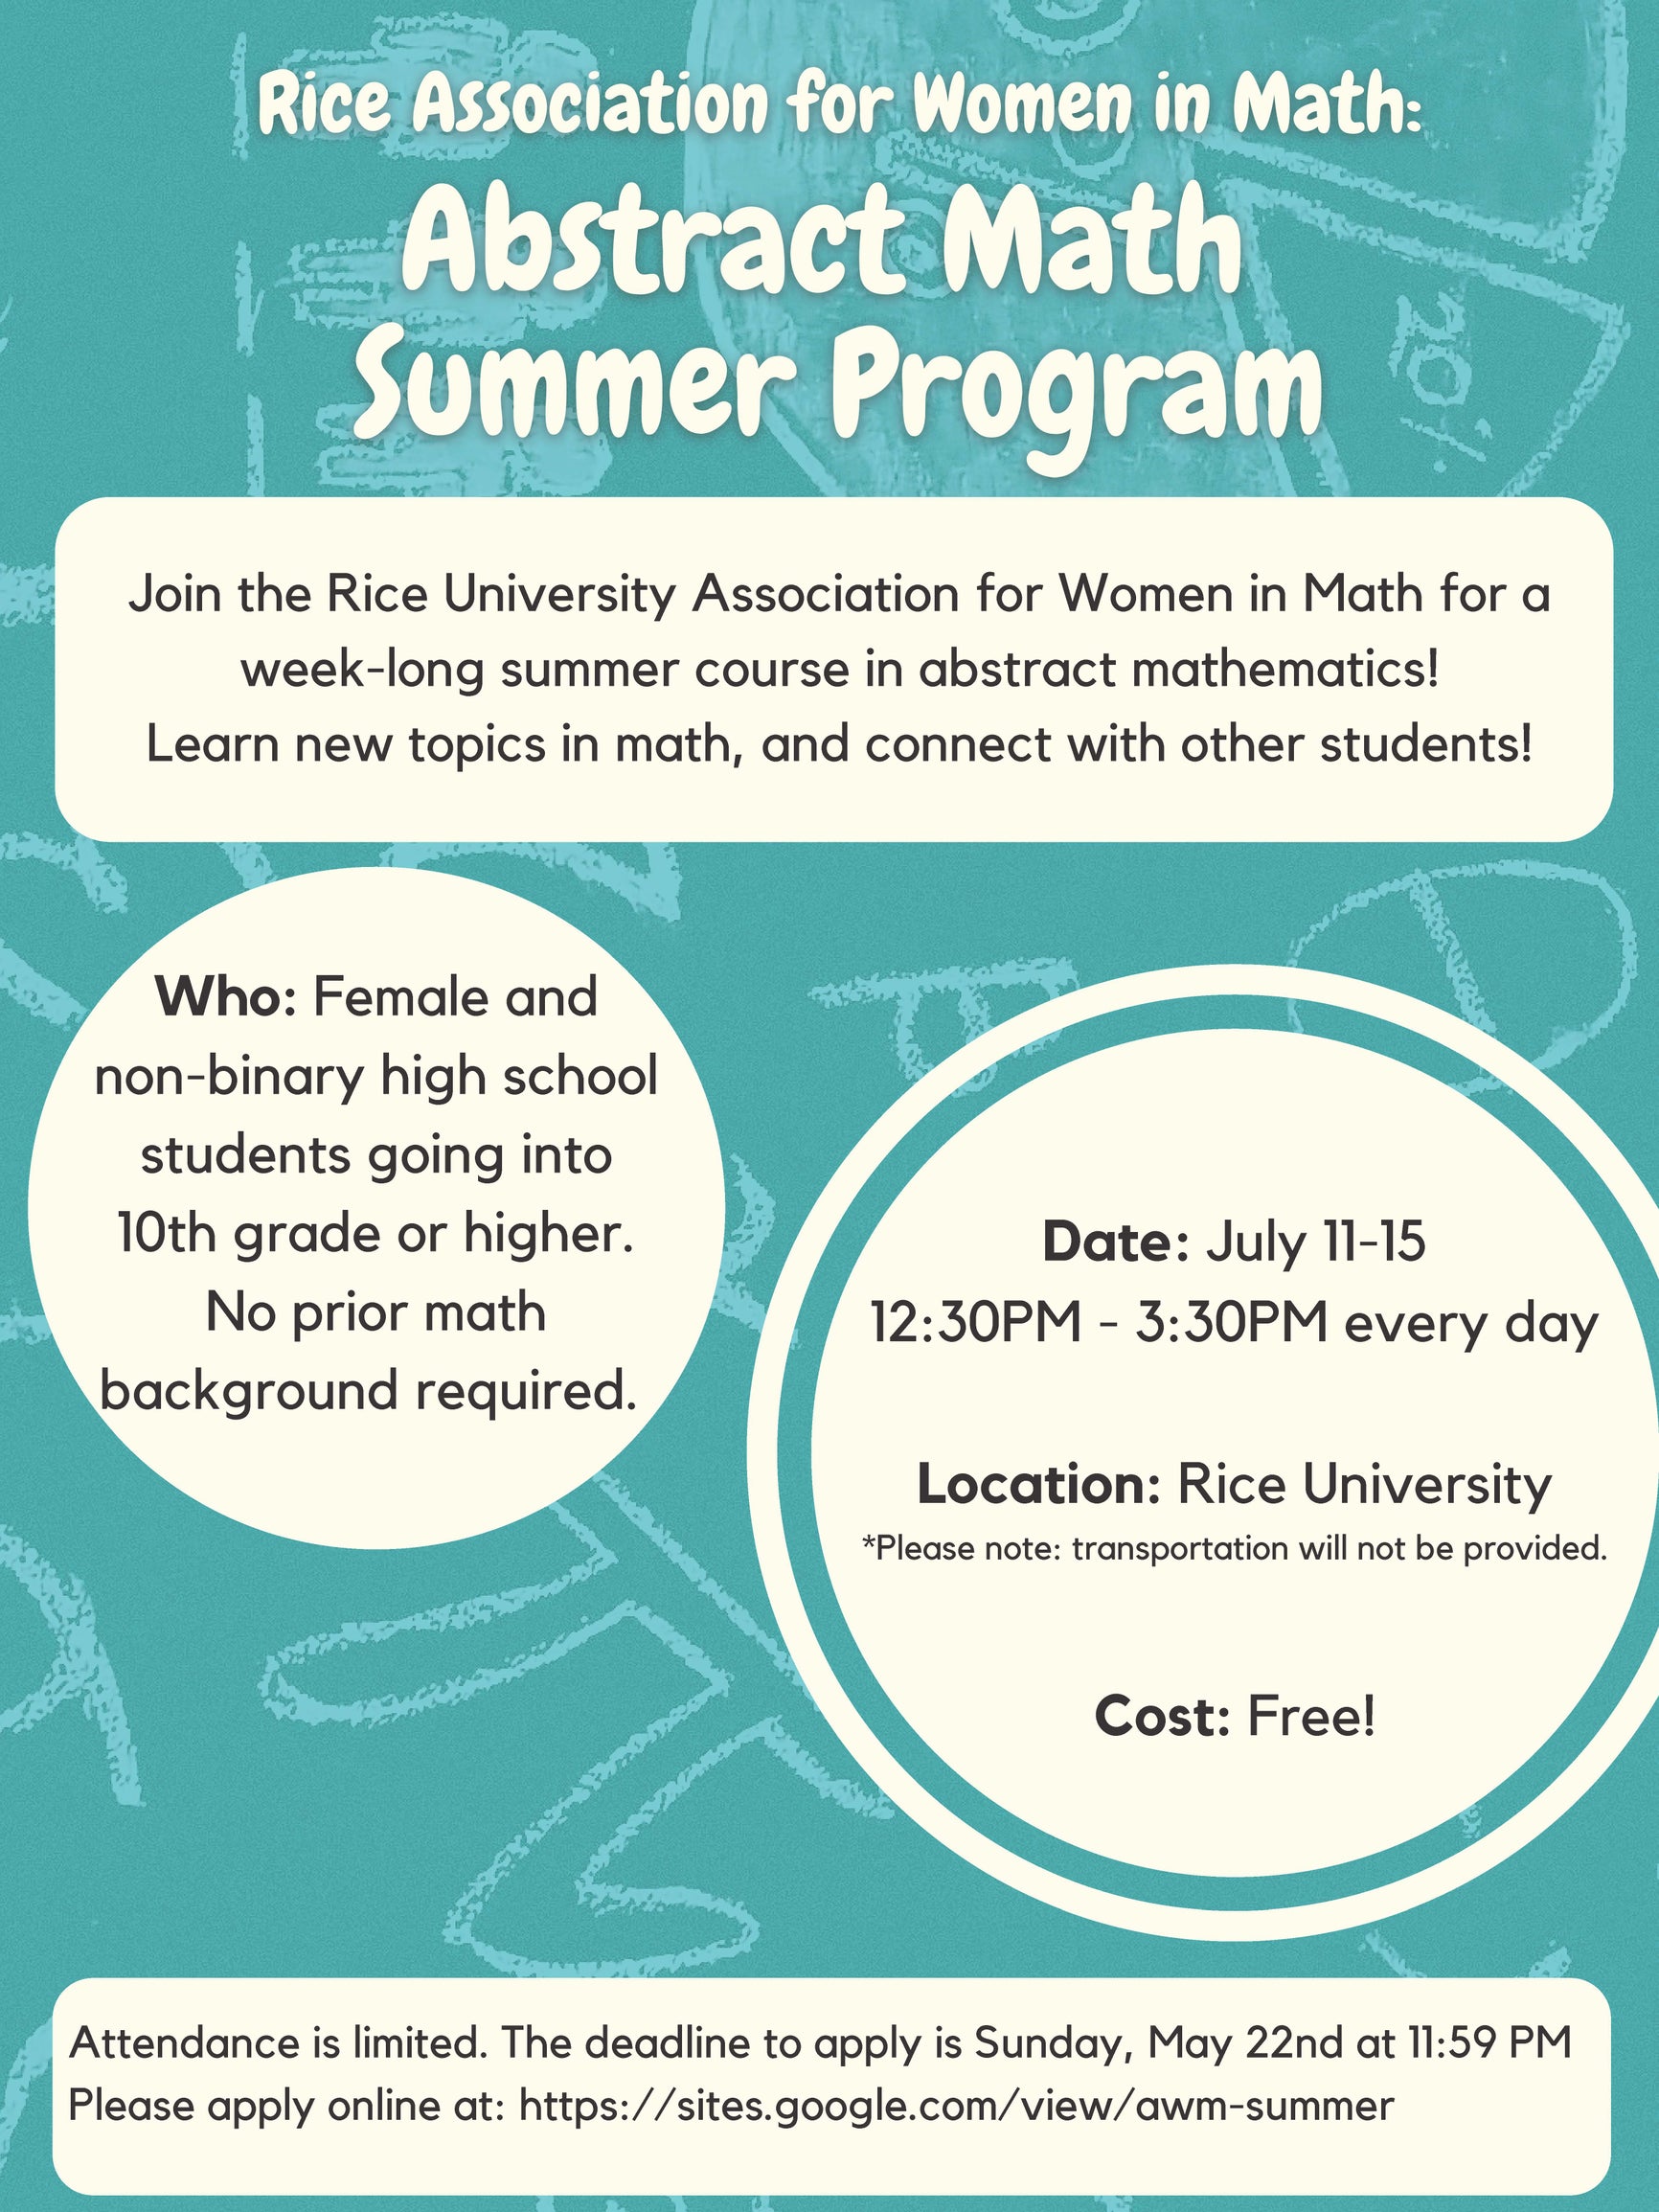 Abstract Math Summer Program Flyer